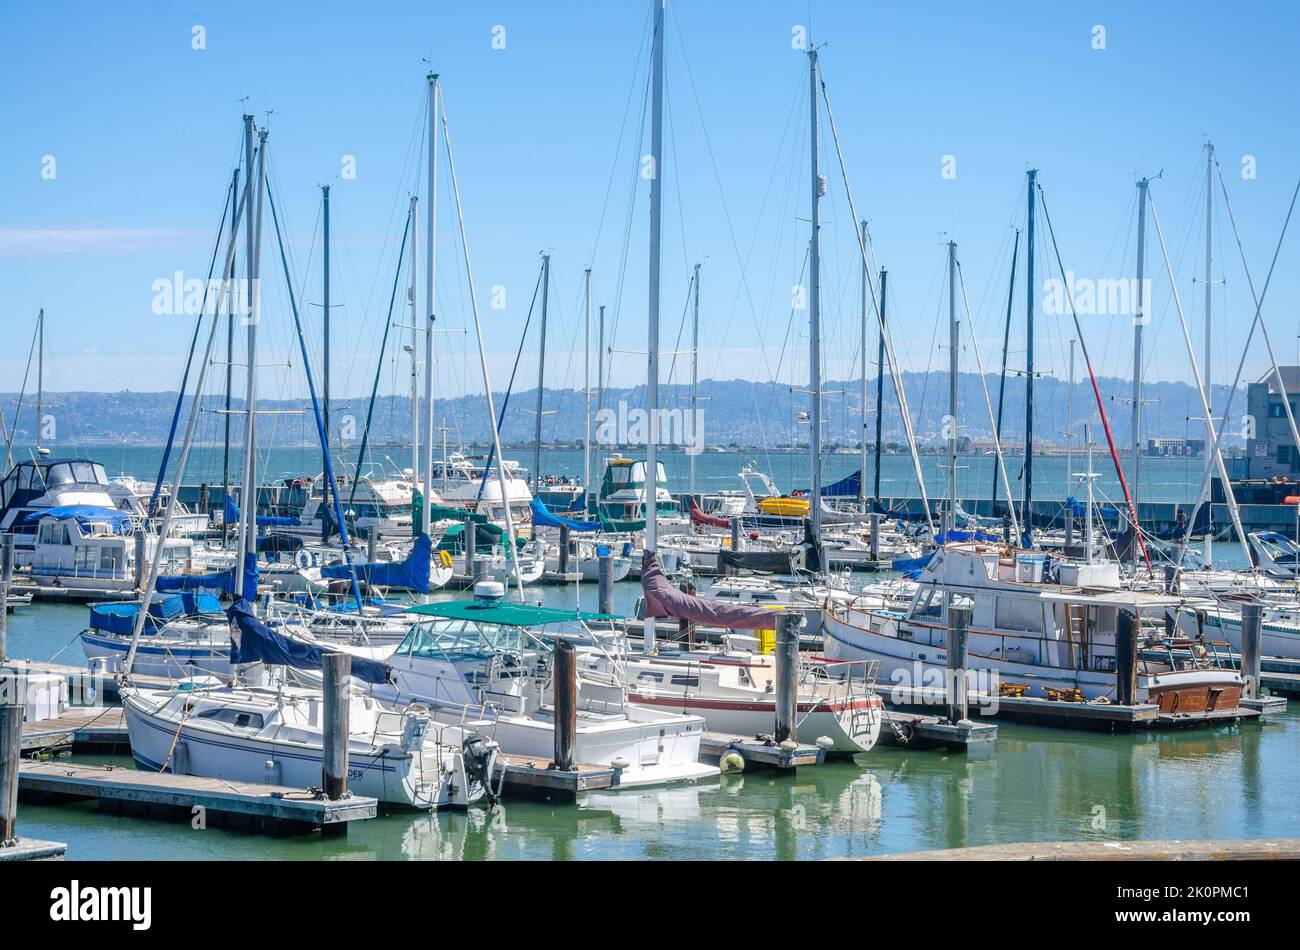 Sailing boats moored at a marina at Pier 39 in San Francisco, California, USA Stock Photo